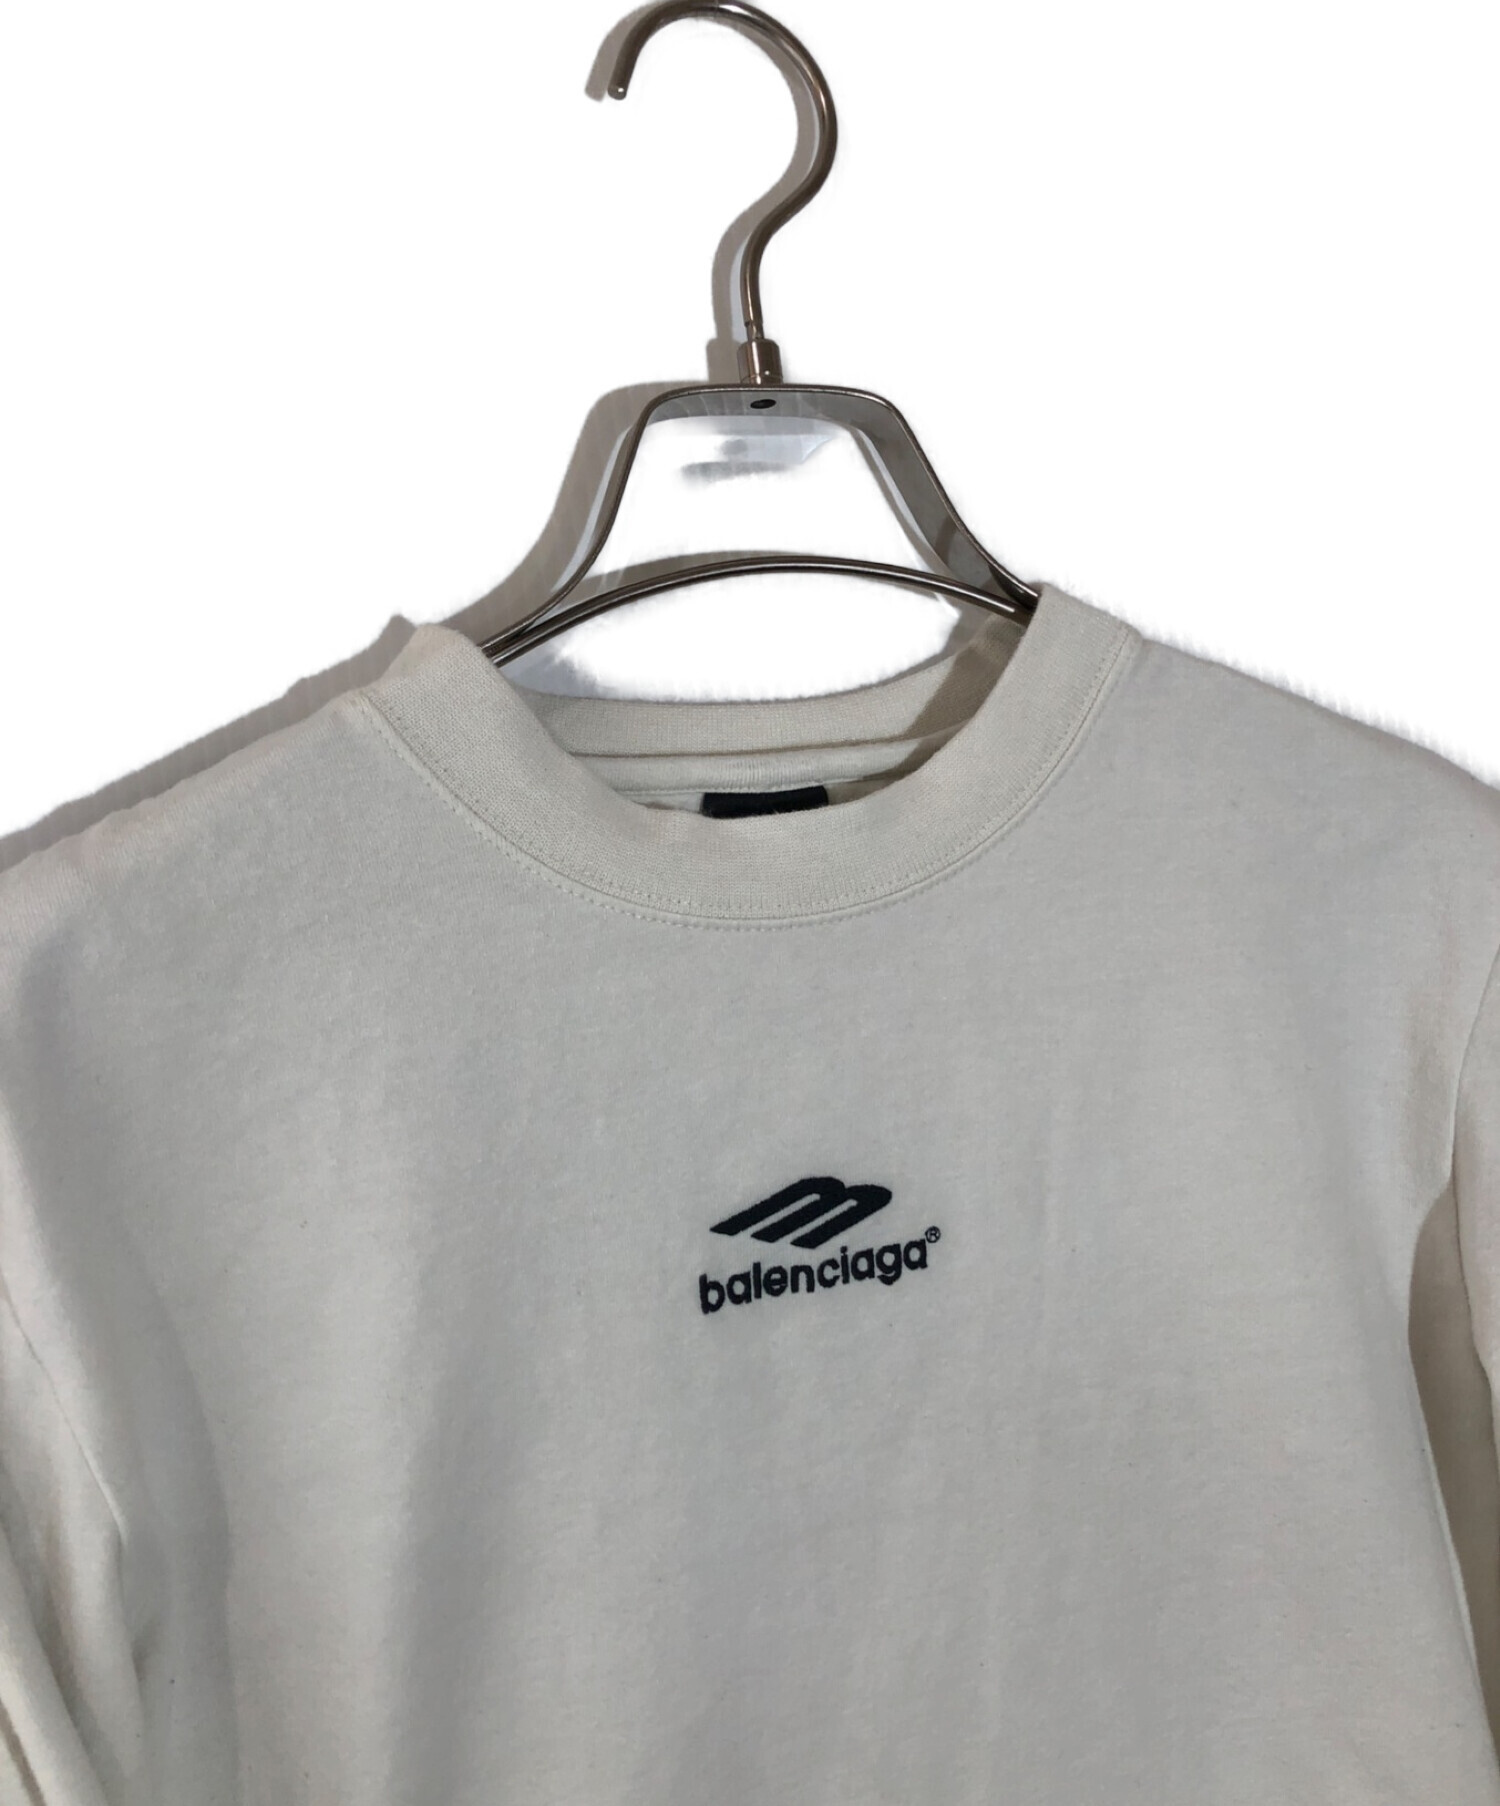 BALENCIAGA バレンシアガ 22SS バックロゴ刺繍 レイヤード長袖シャツ Tシャツ カットソー 681042 TLVF3 グレー/ピンク XS #2302